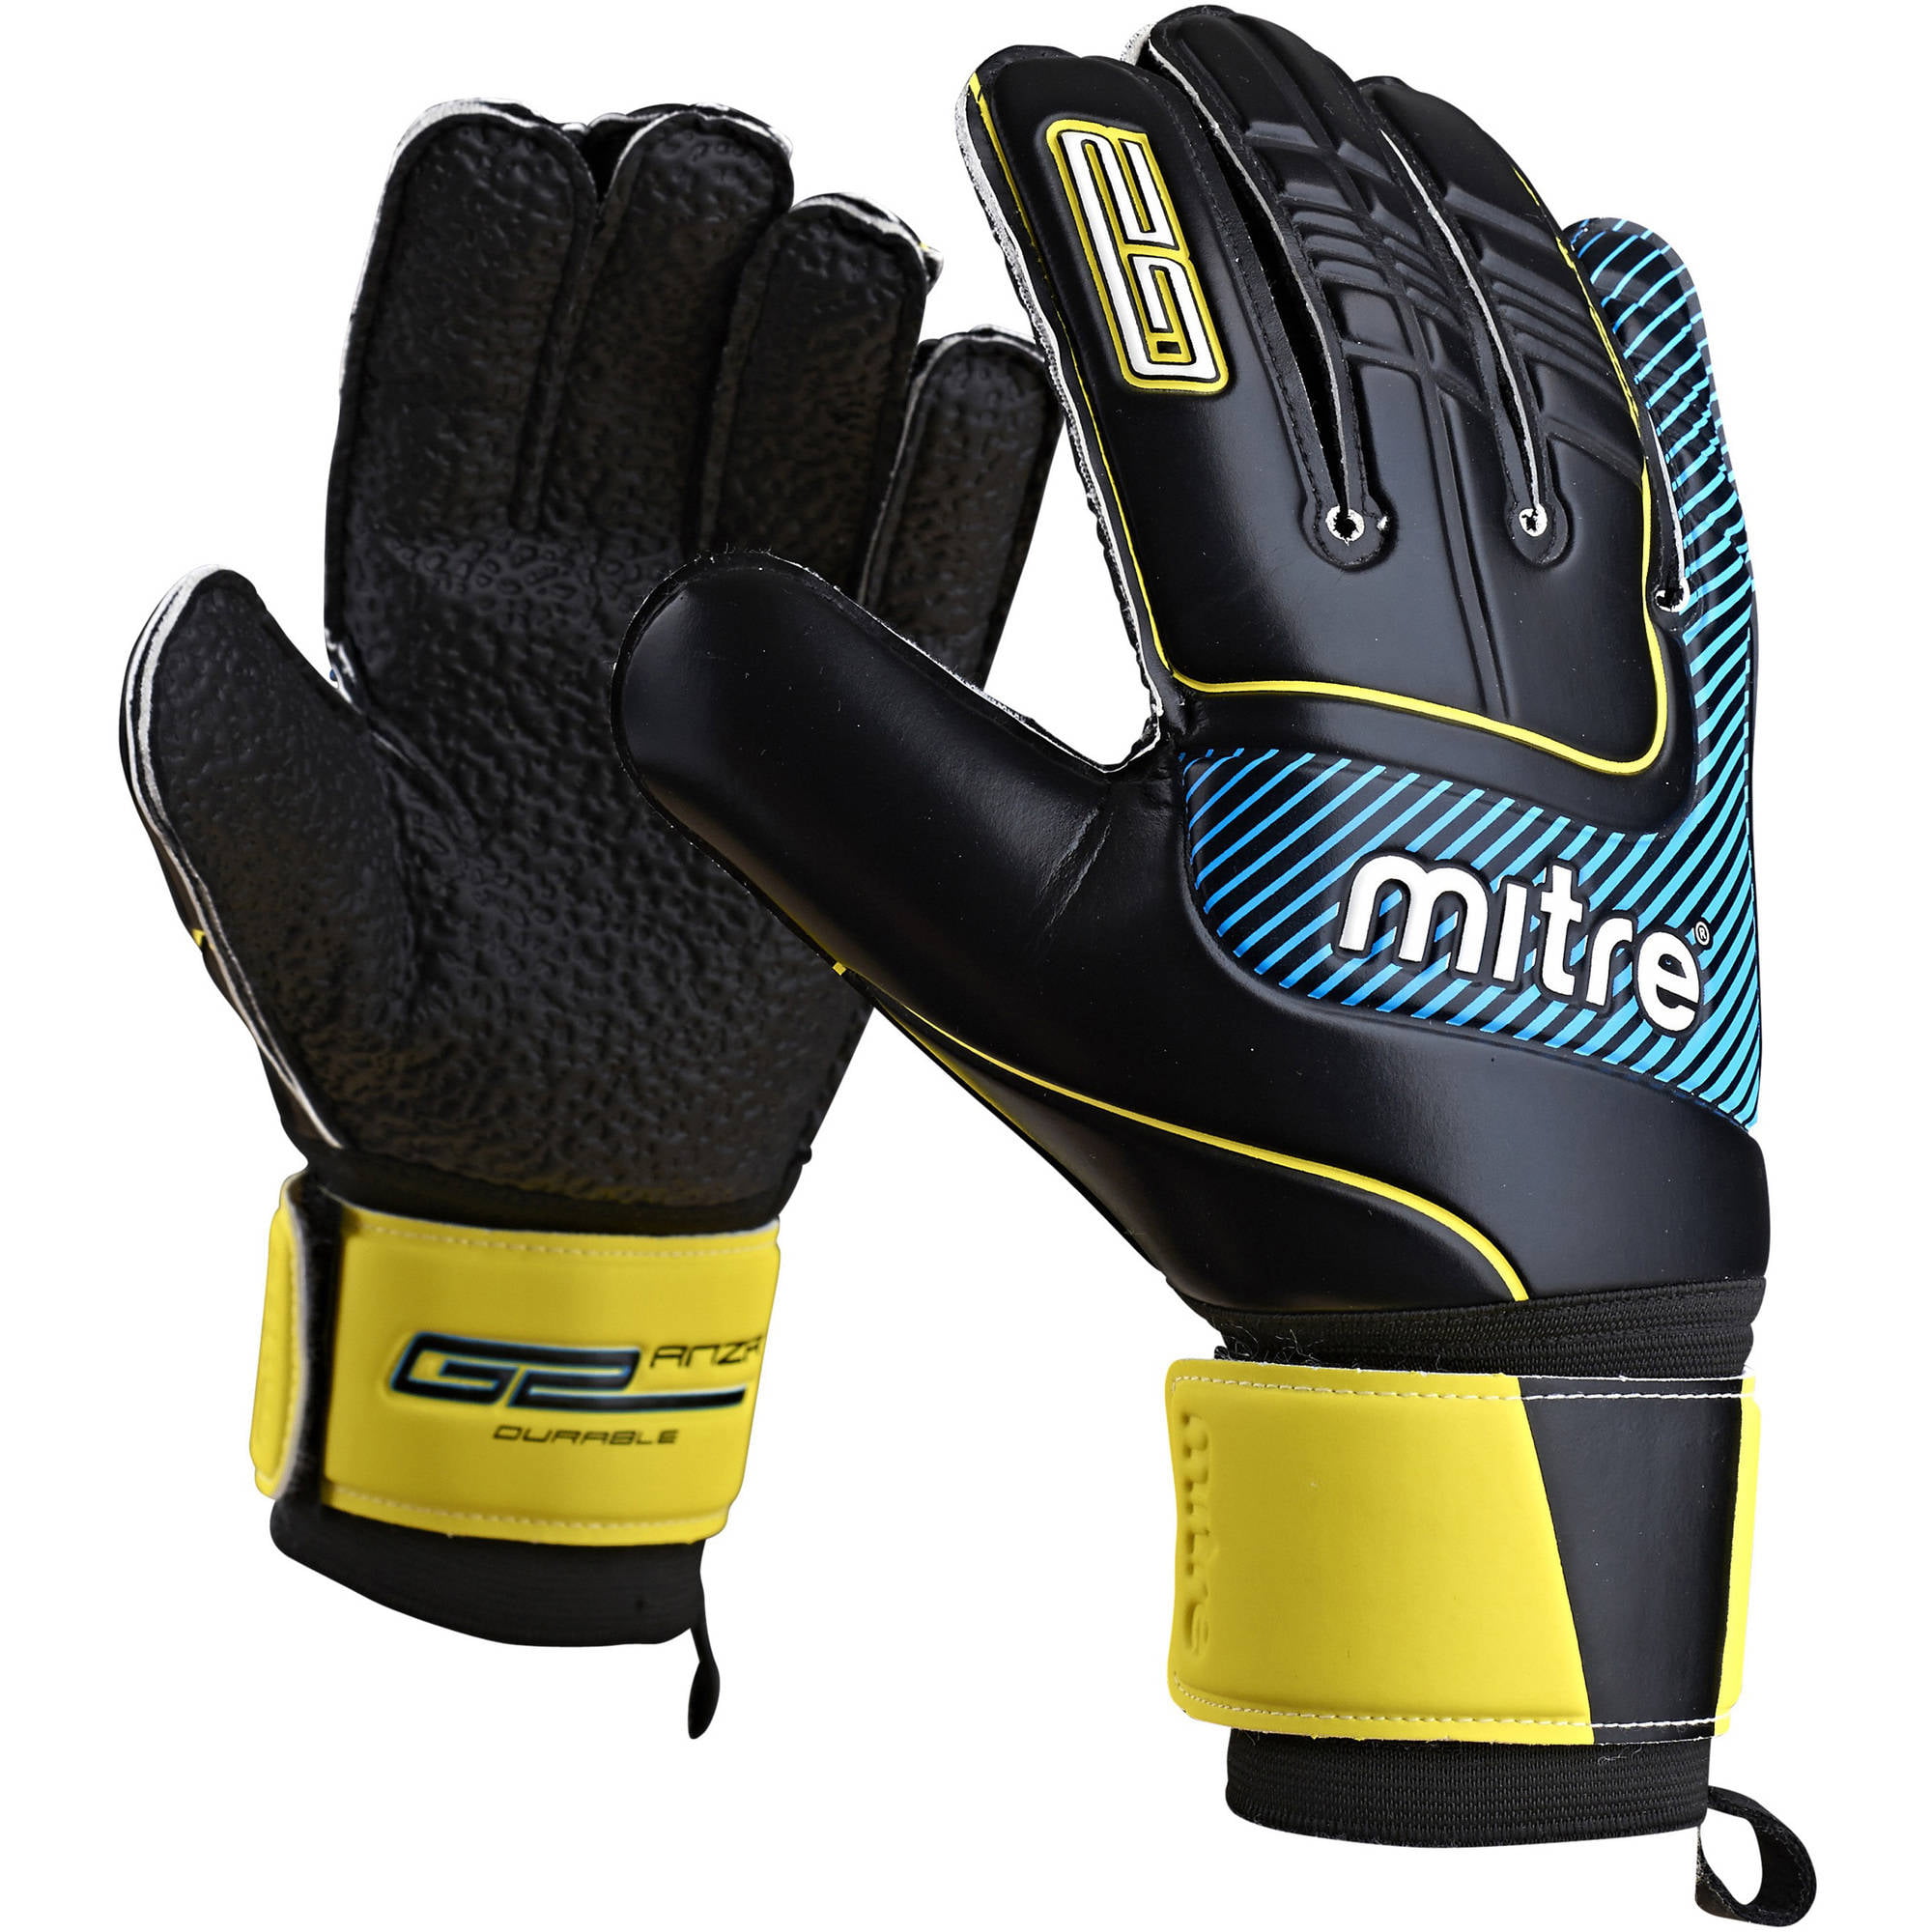 Vintage Mitre Goal Keeper Gloves Size 9 